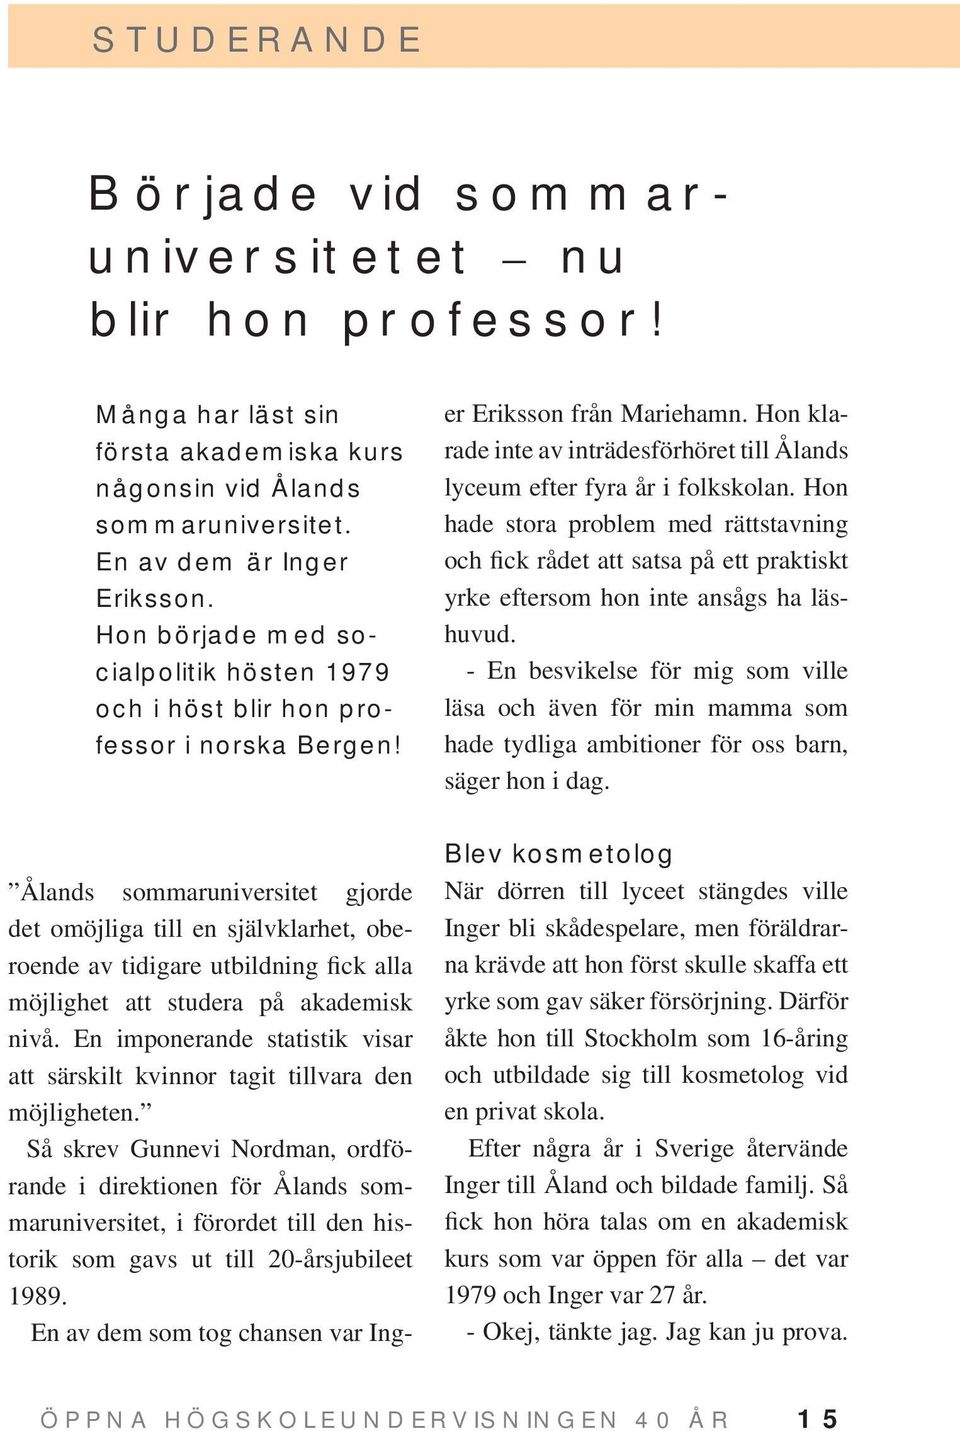 Ålands sommaruniversitet gjorde det omöjliga till en självklarhet, oberoende av tidigare utbildning fick alla möjlighet att studera på akademisk nivå.